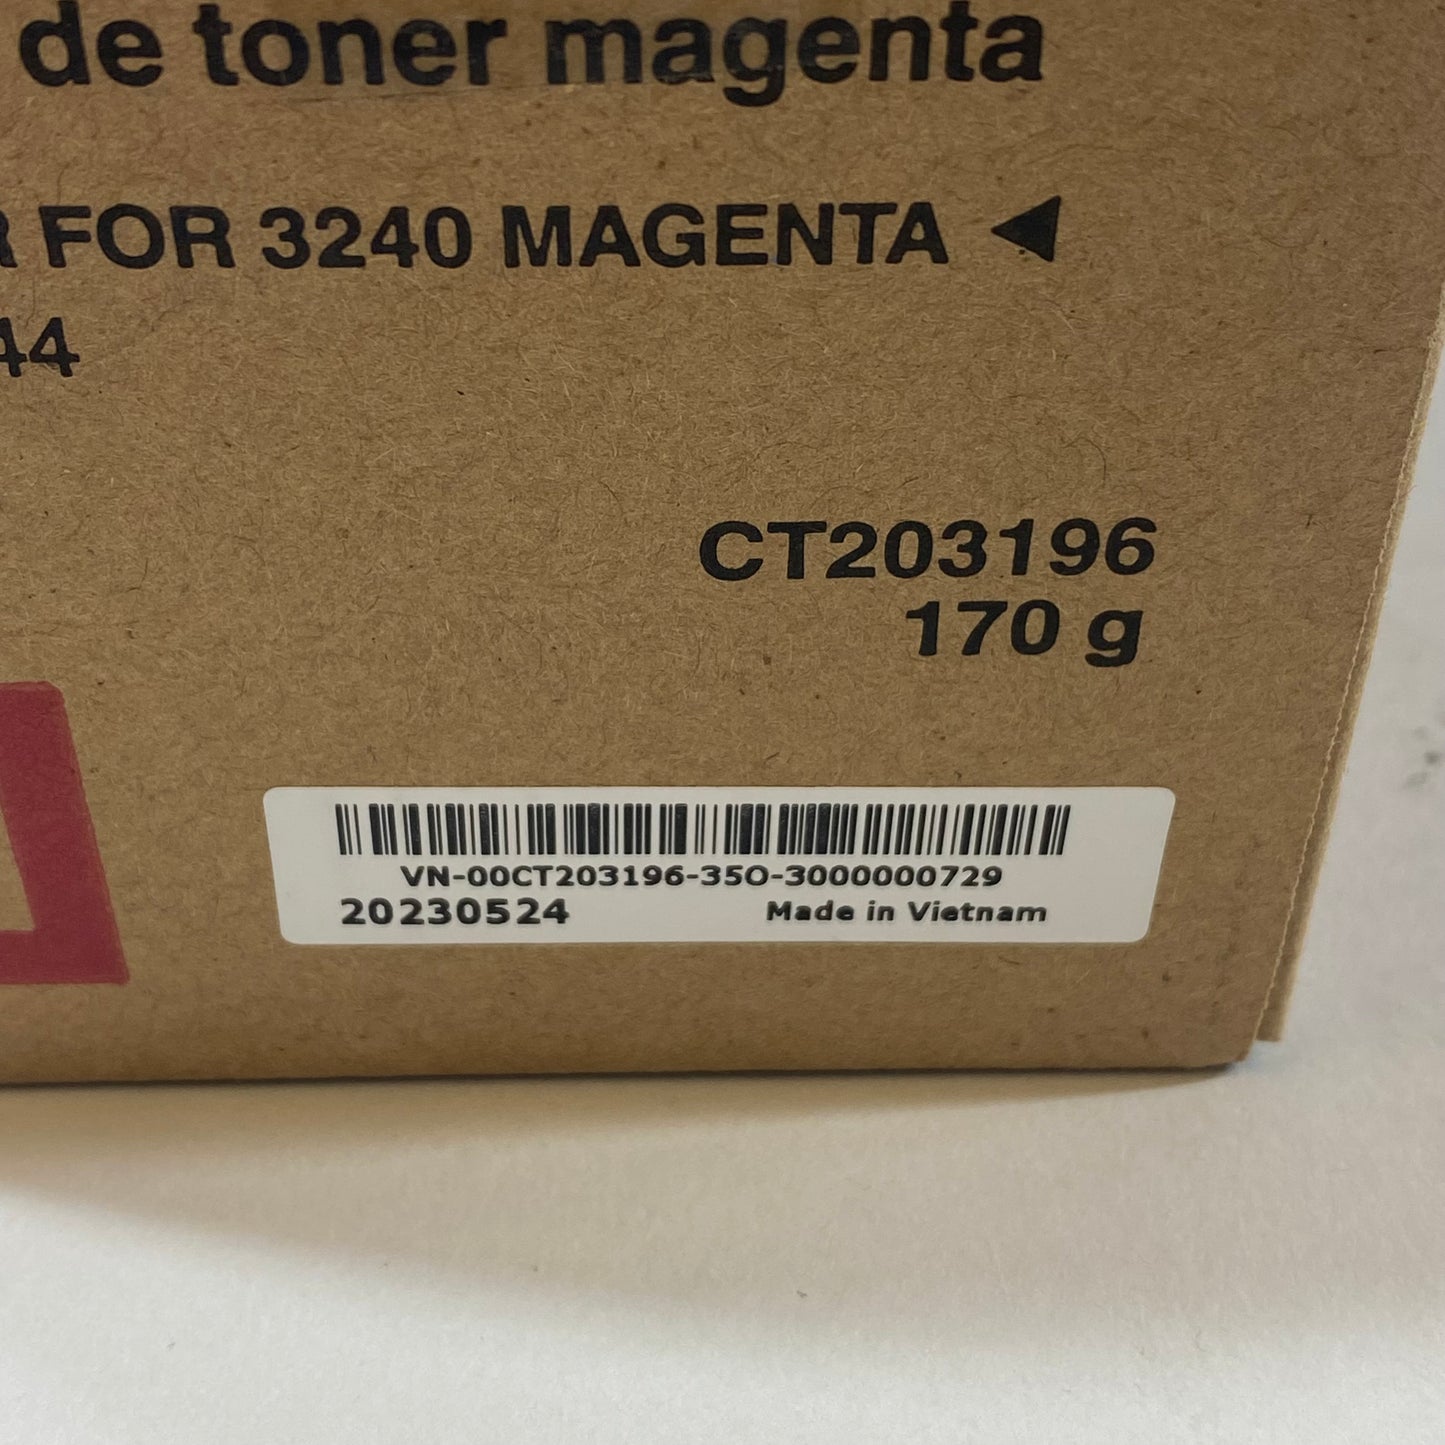 New Fujifilm CT203196 Magenta Toner For CX 3240